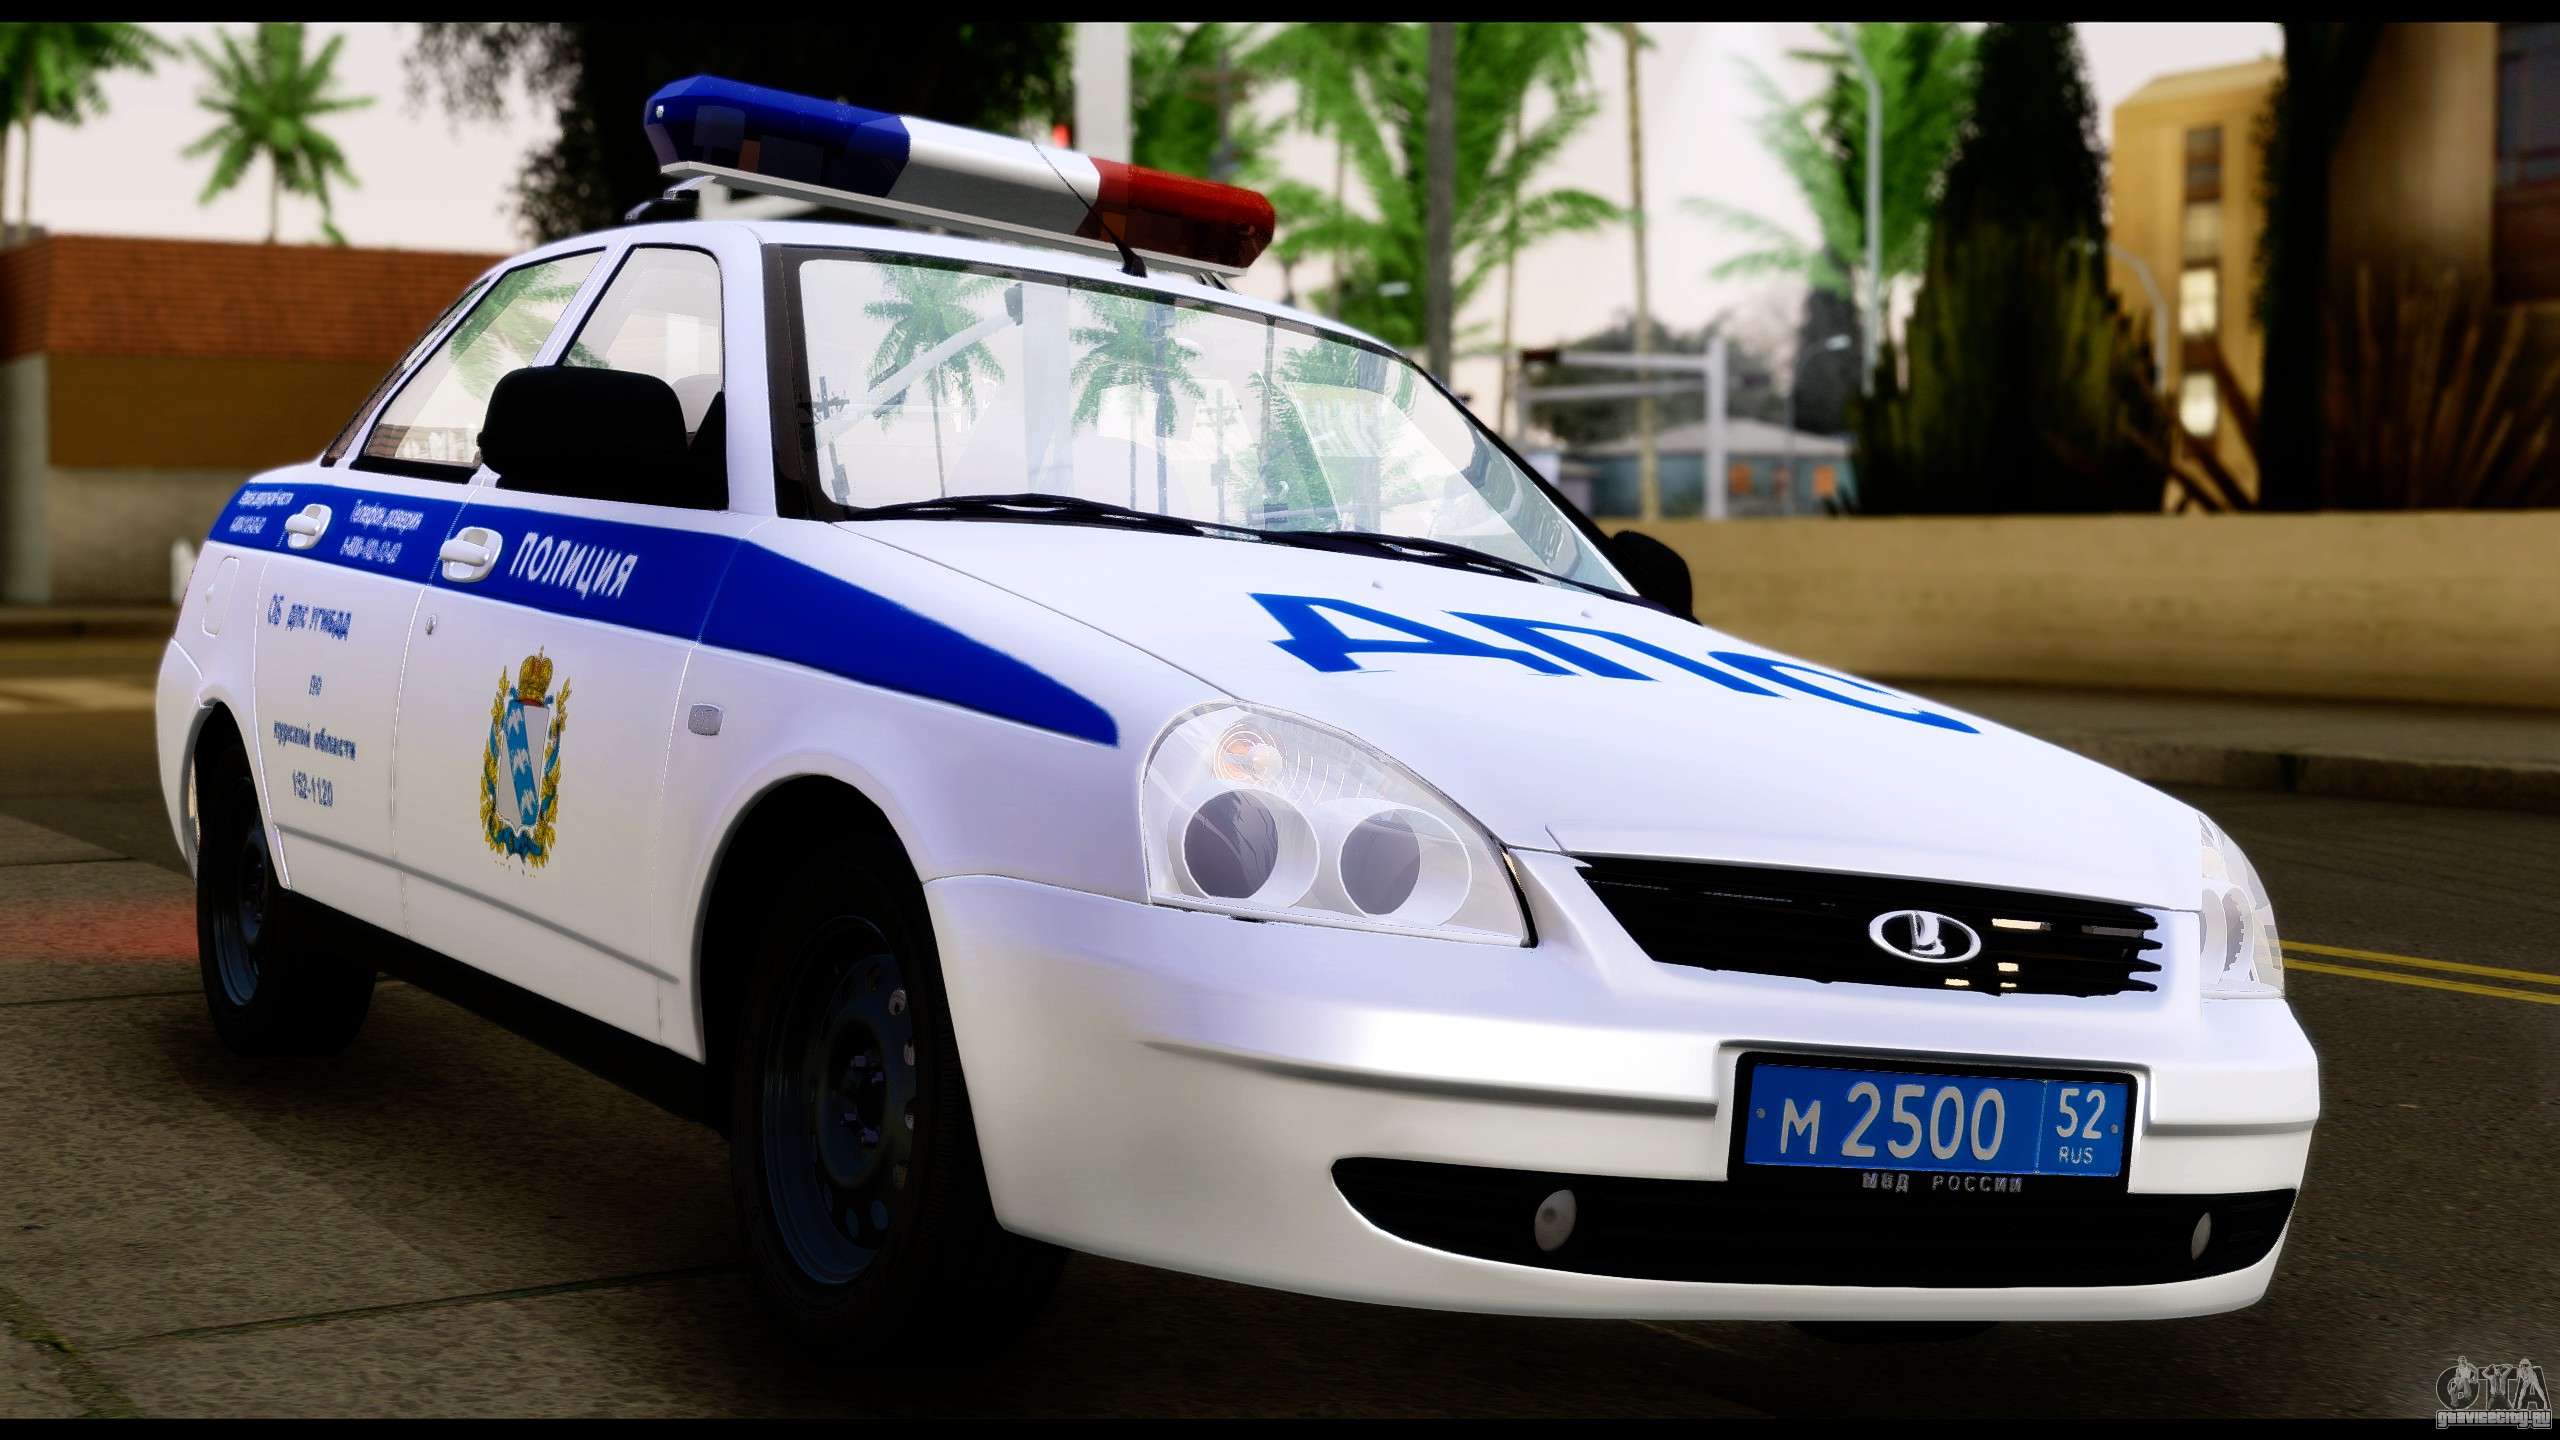 police автомобиль полицейский бесплатно